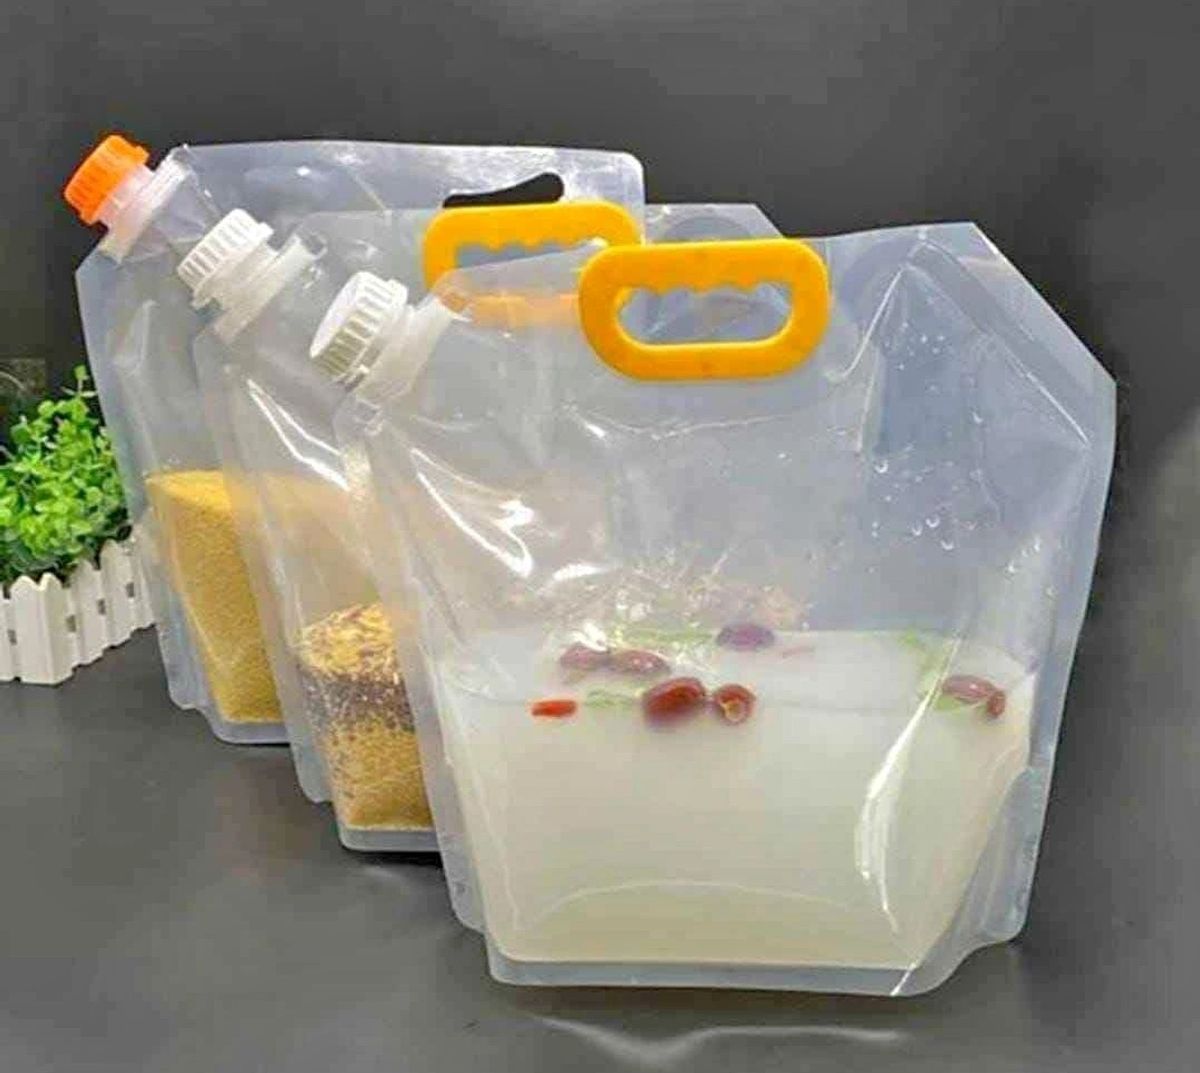 Bolsa para guardar alimentos hermetica con tapa rosca Transparentes Ideales  almacenar Alimentos en el refrigerador, Bolsas